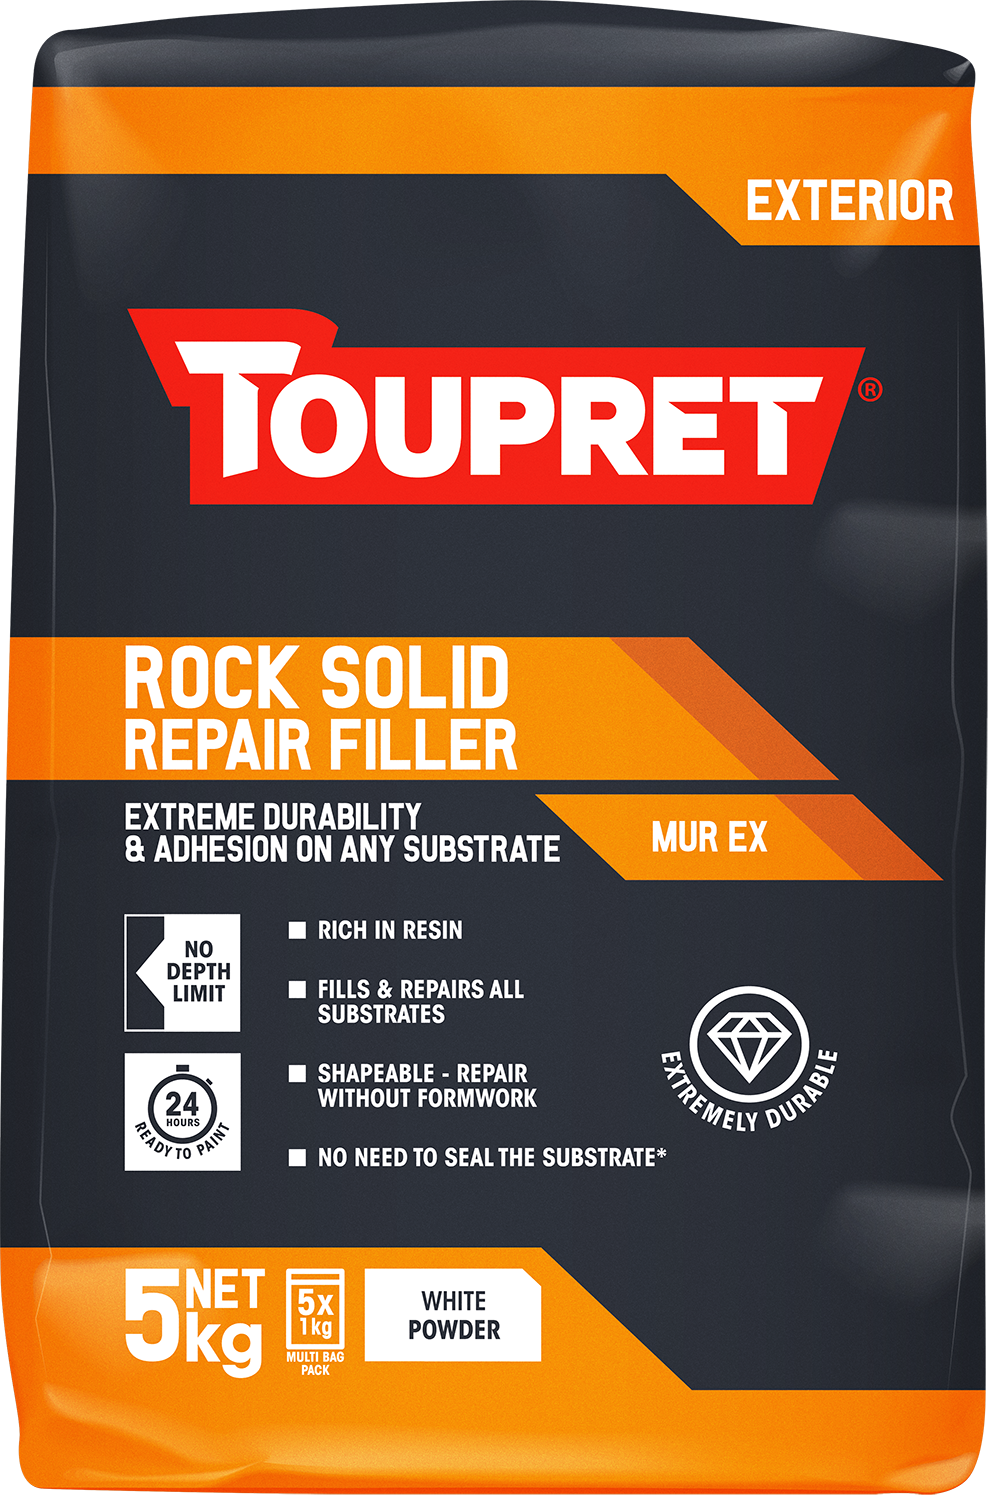 Toupret Rock Solid Repair Filler (Murex) 5x 1kg bag in bag